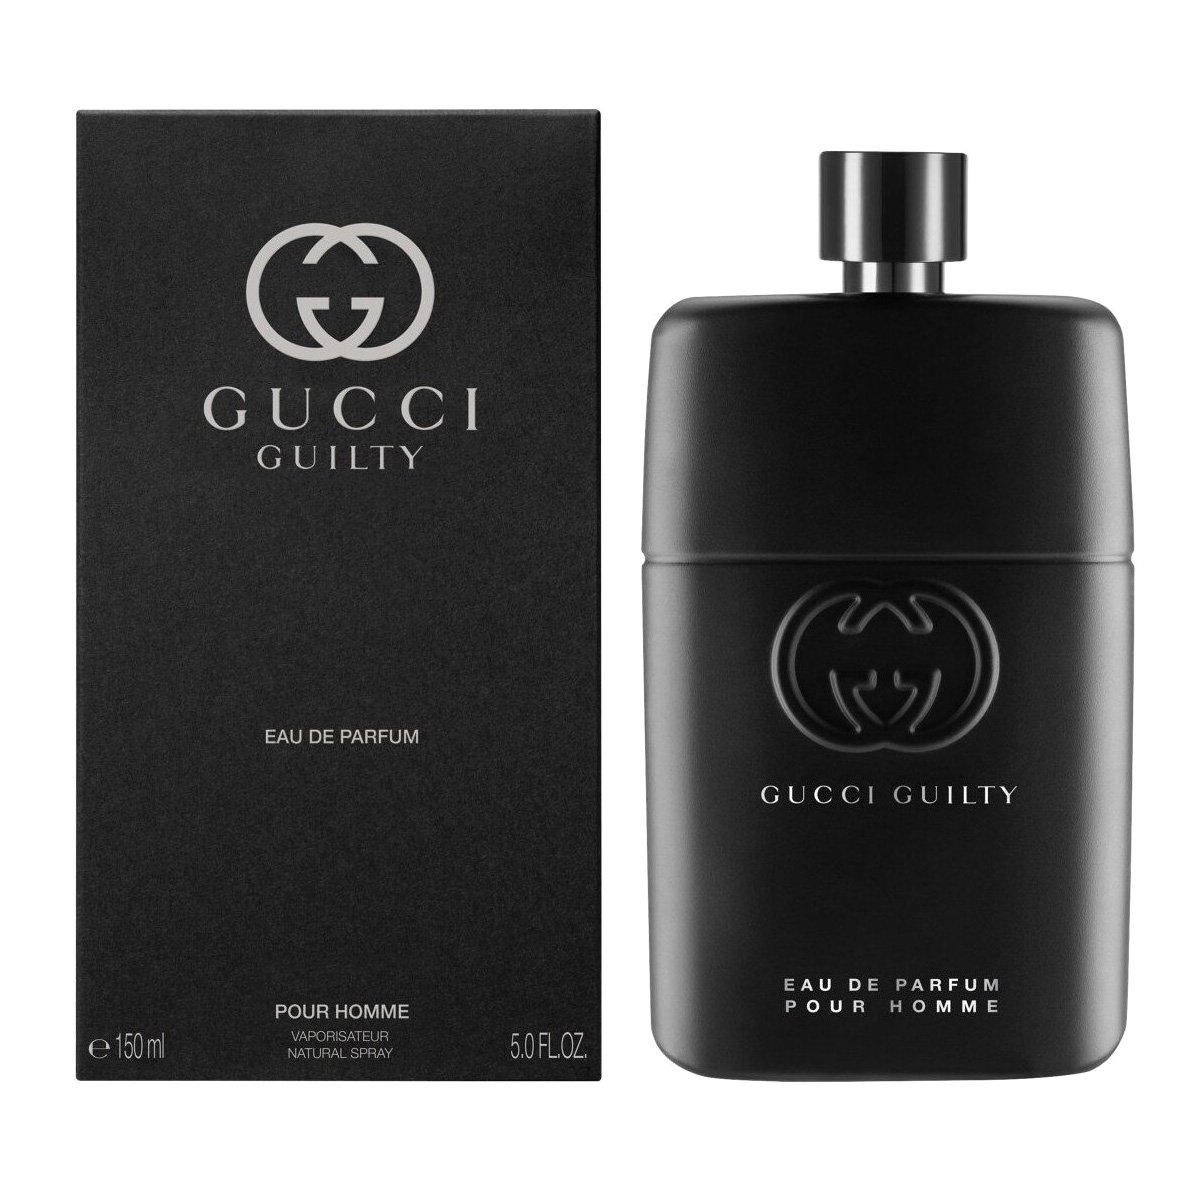 Gucci Guilty Pour Homme Eau de Parfum купить в Минске и РБ